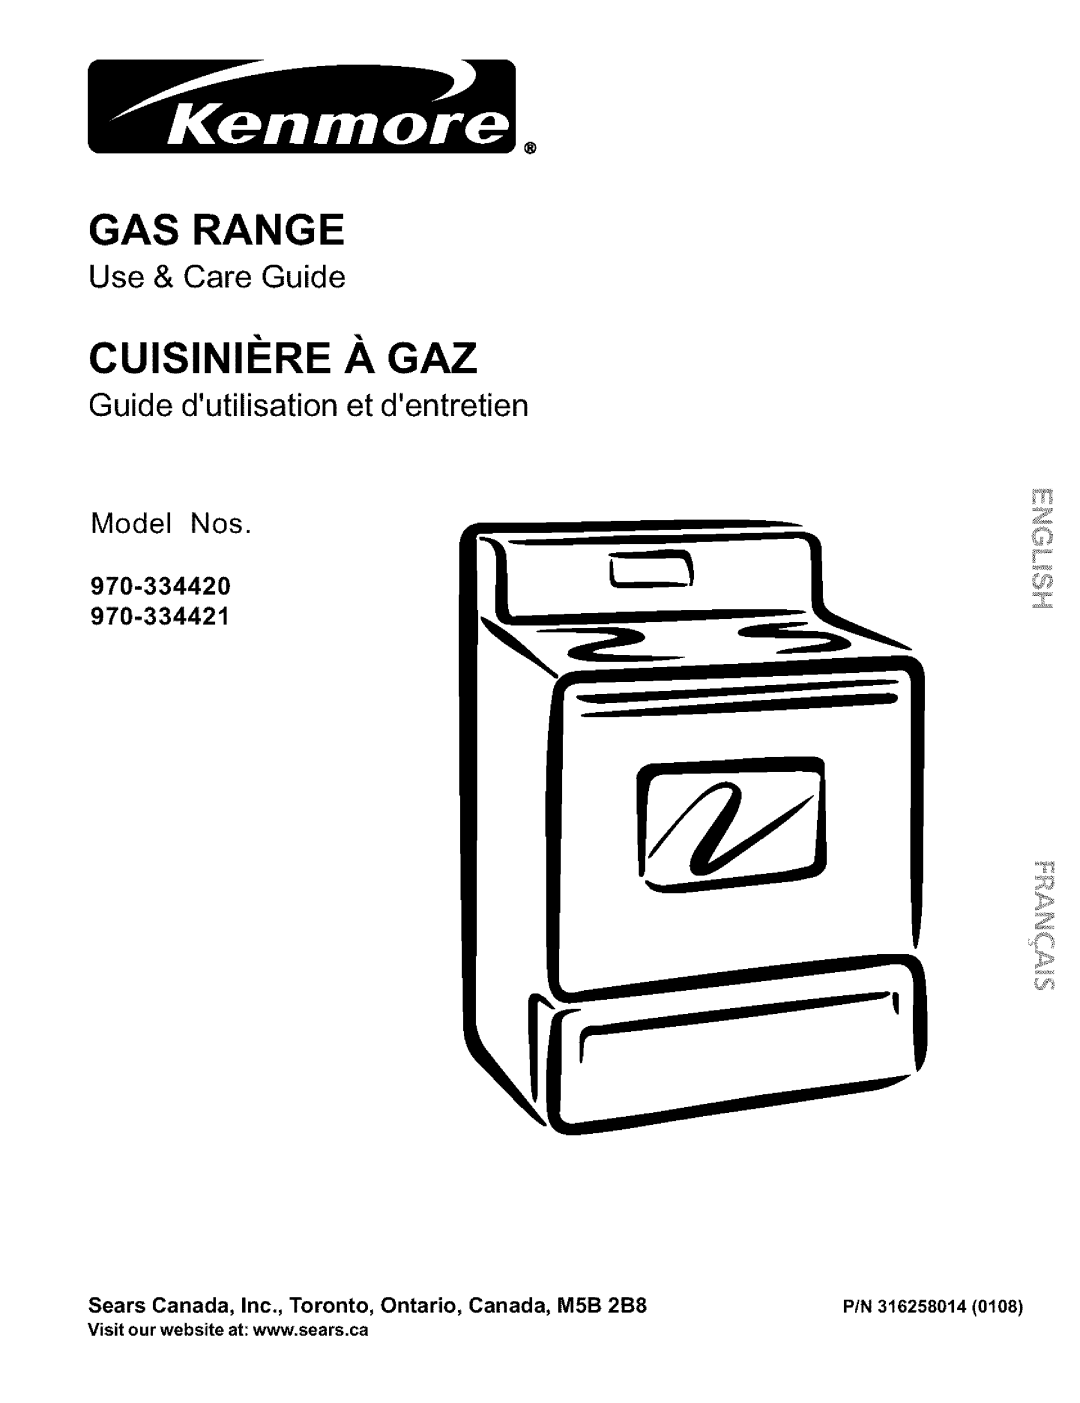 Kenmore 970-334420 manual Gas Range, Cuisinii_Re A Gaz, Use & Care Guide, Guide dutilisation et d rentret en, Model Nos 